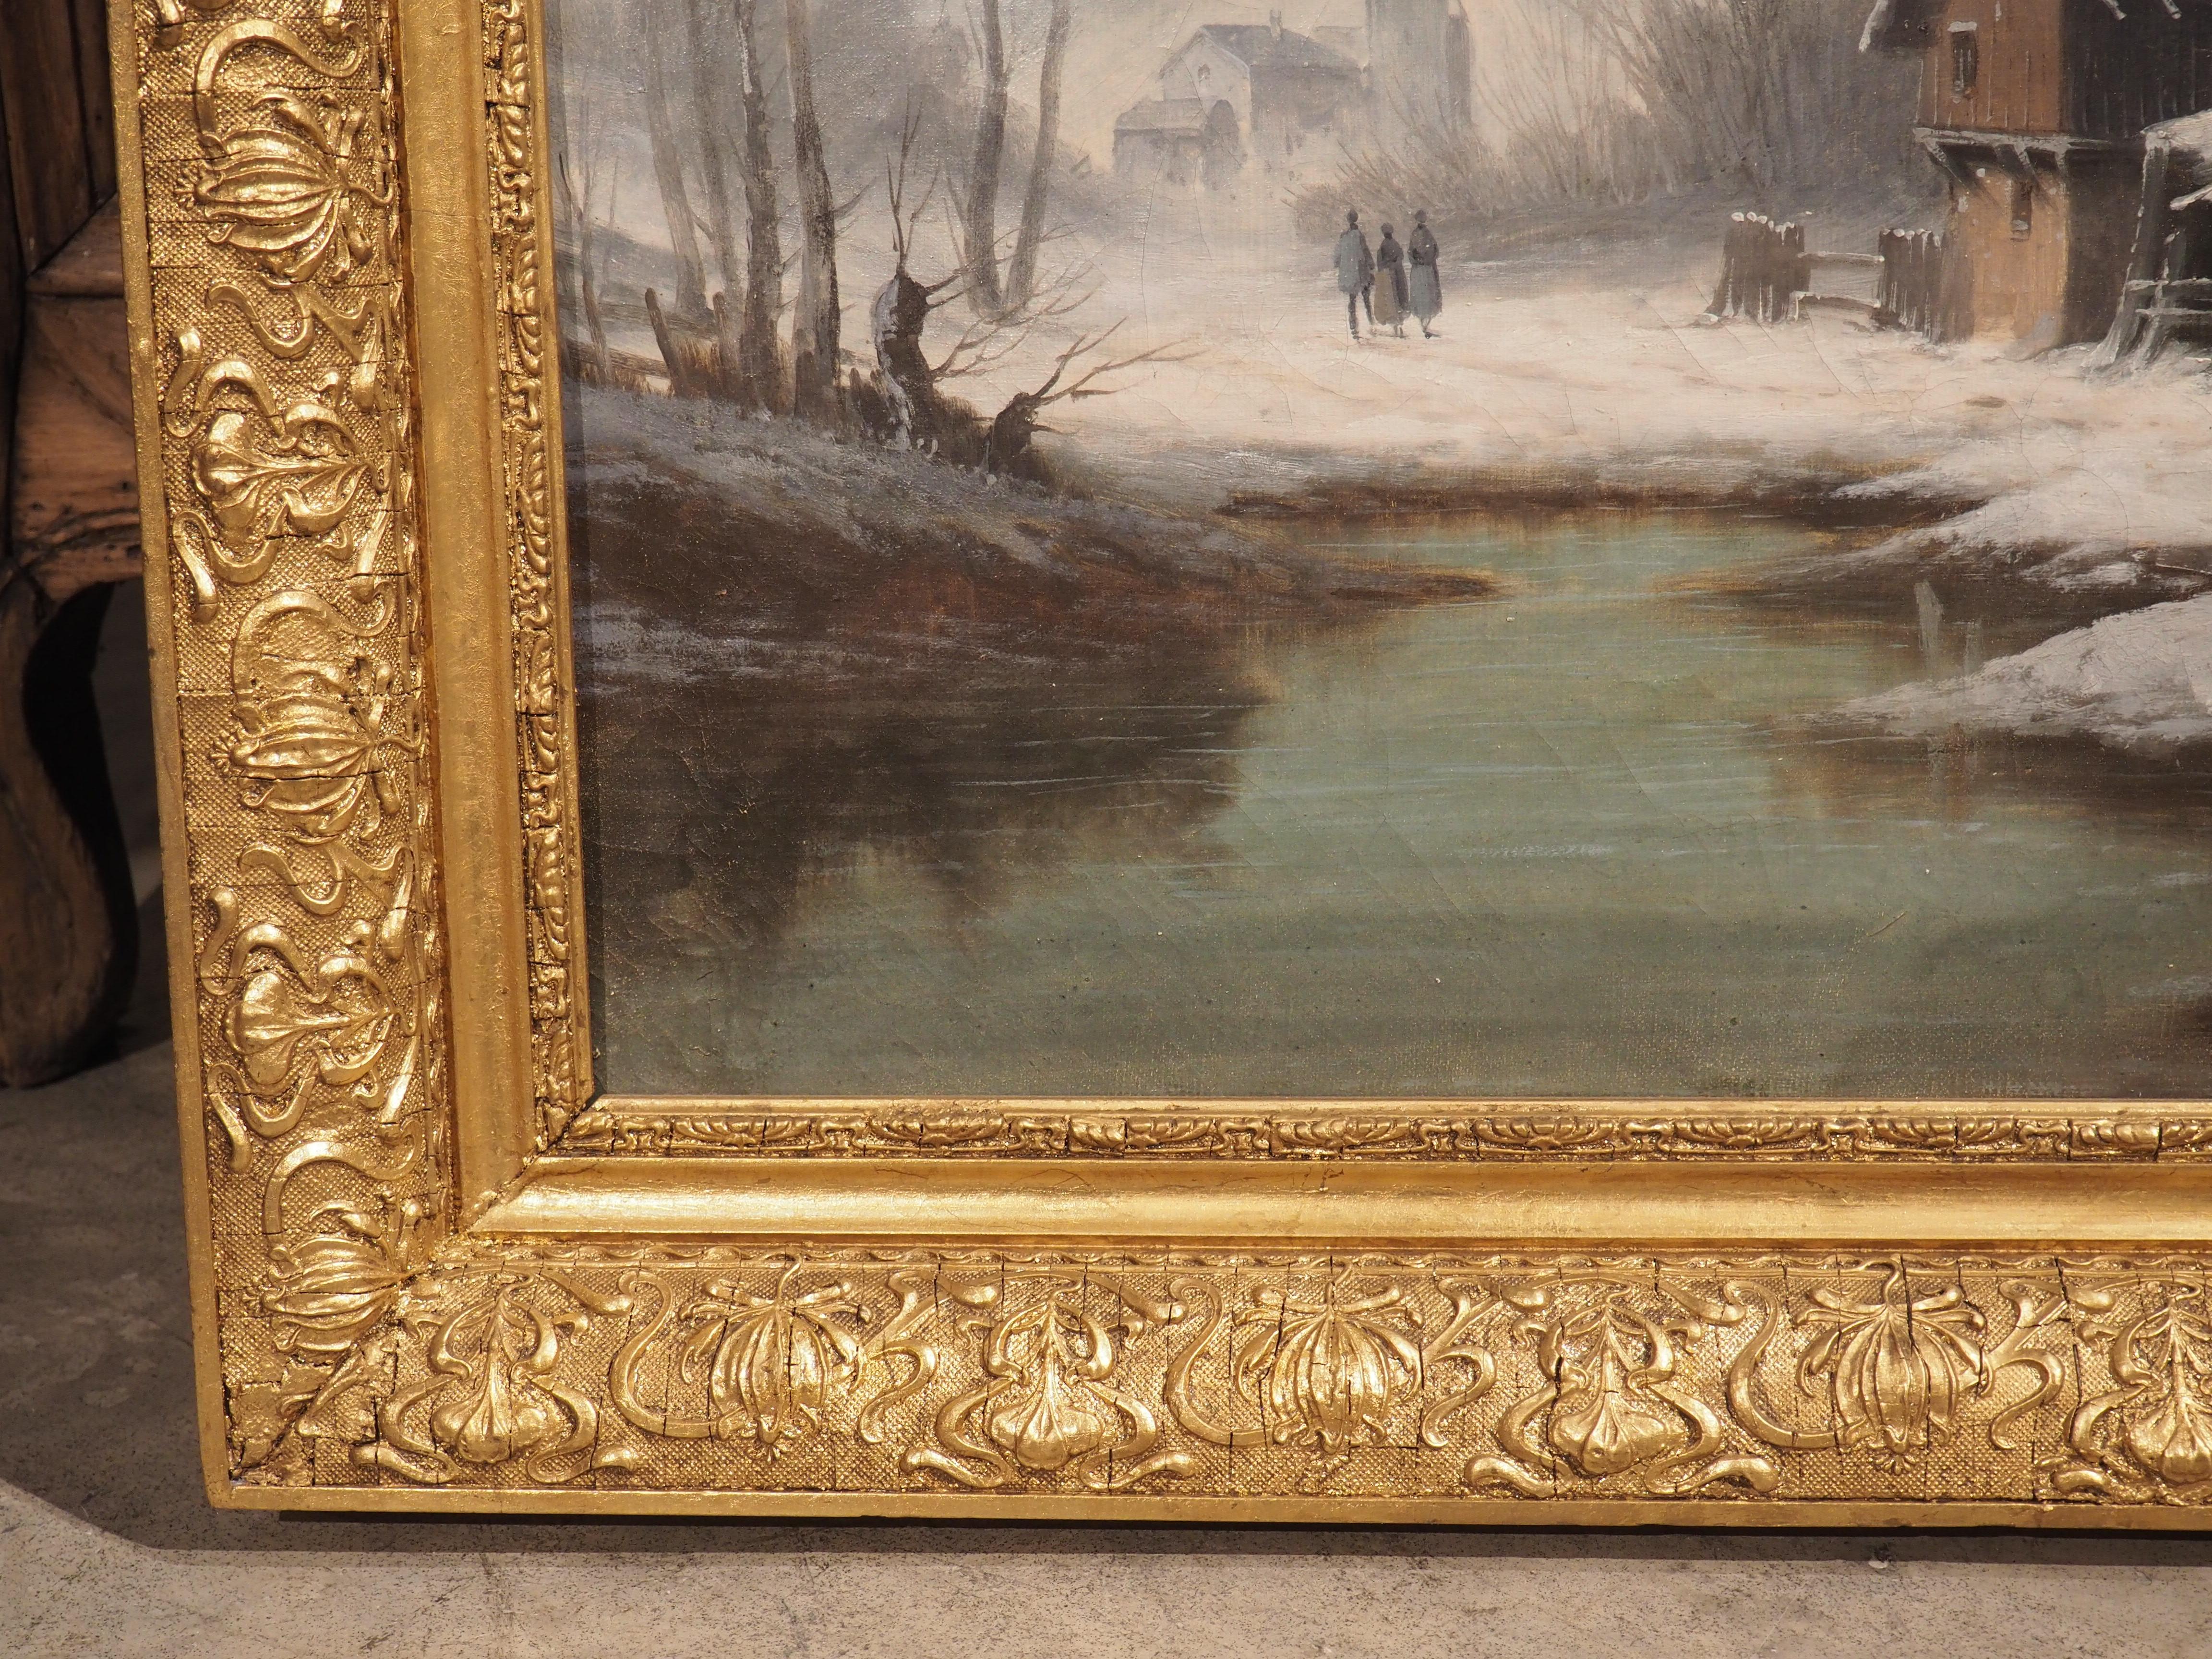 Dieses französische Gemälde einer Winterlandschaft aus den 1800er Jahren sitzt sicher in dem originalen Goldholzrahmen. Der handgeschnitzte Rahmen besteht aus mehreren langen Bändern mit gewundenen Stofflocken, die eine sich wiederholende Umrandung